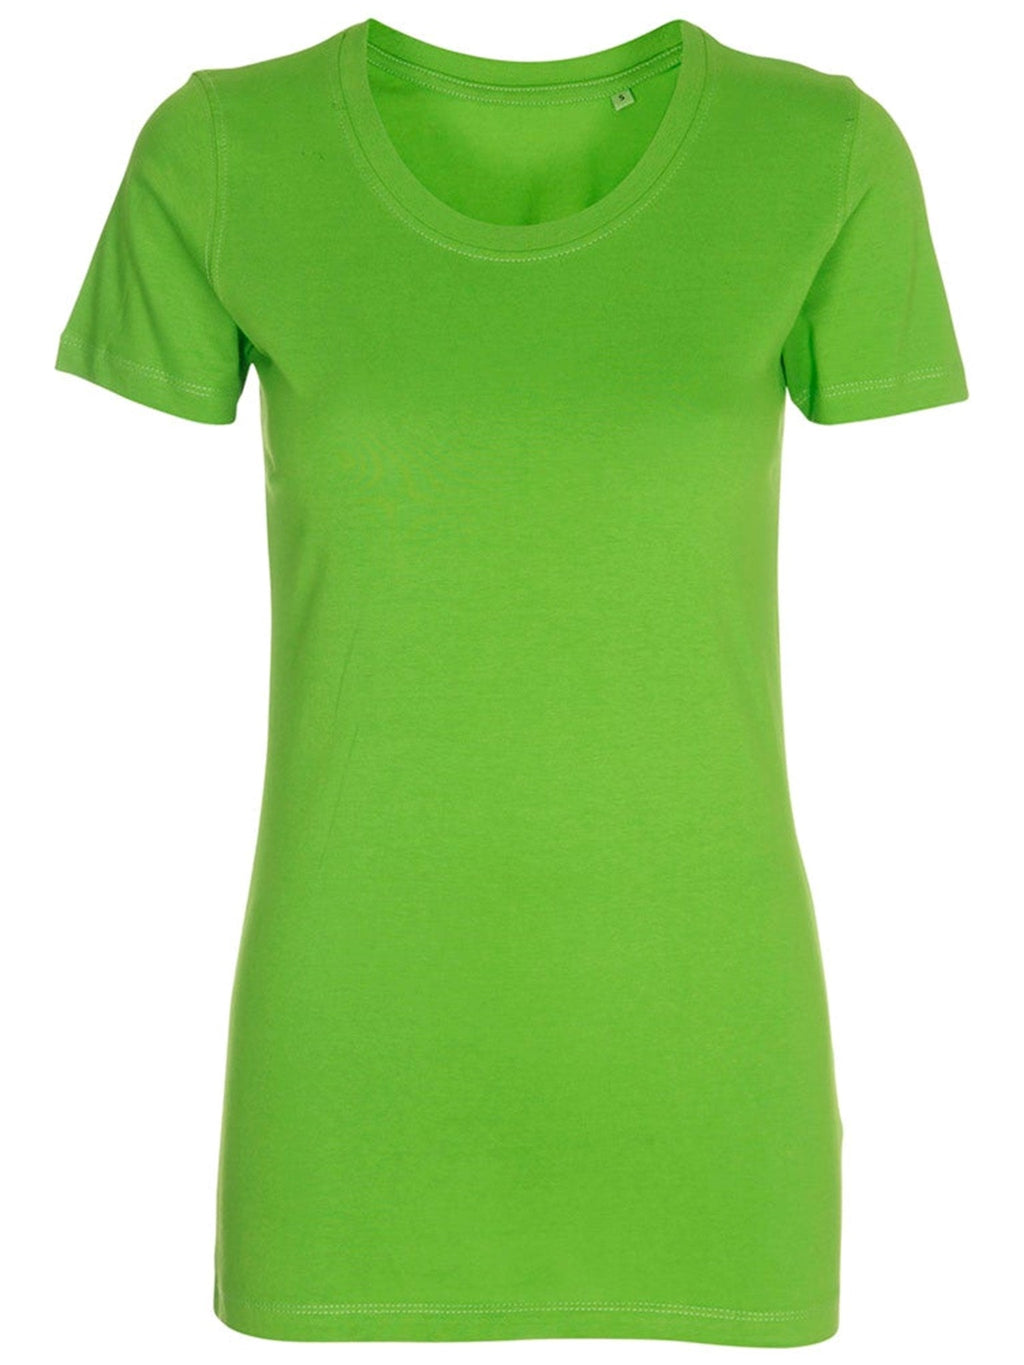 Camiseta ajustada - lima verde